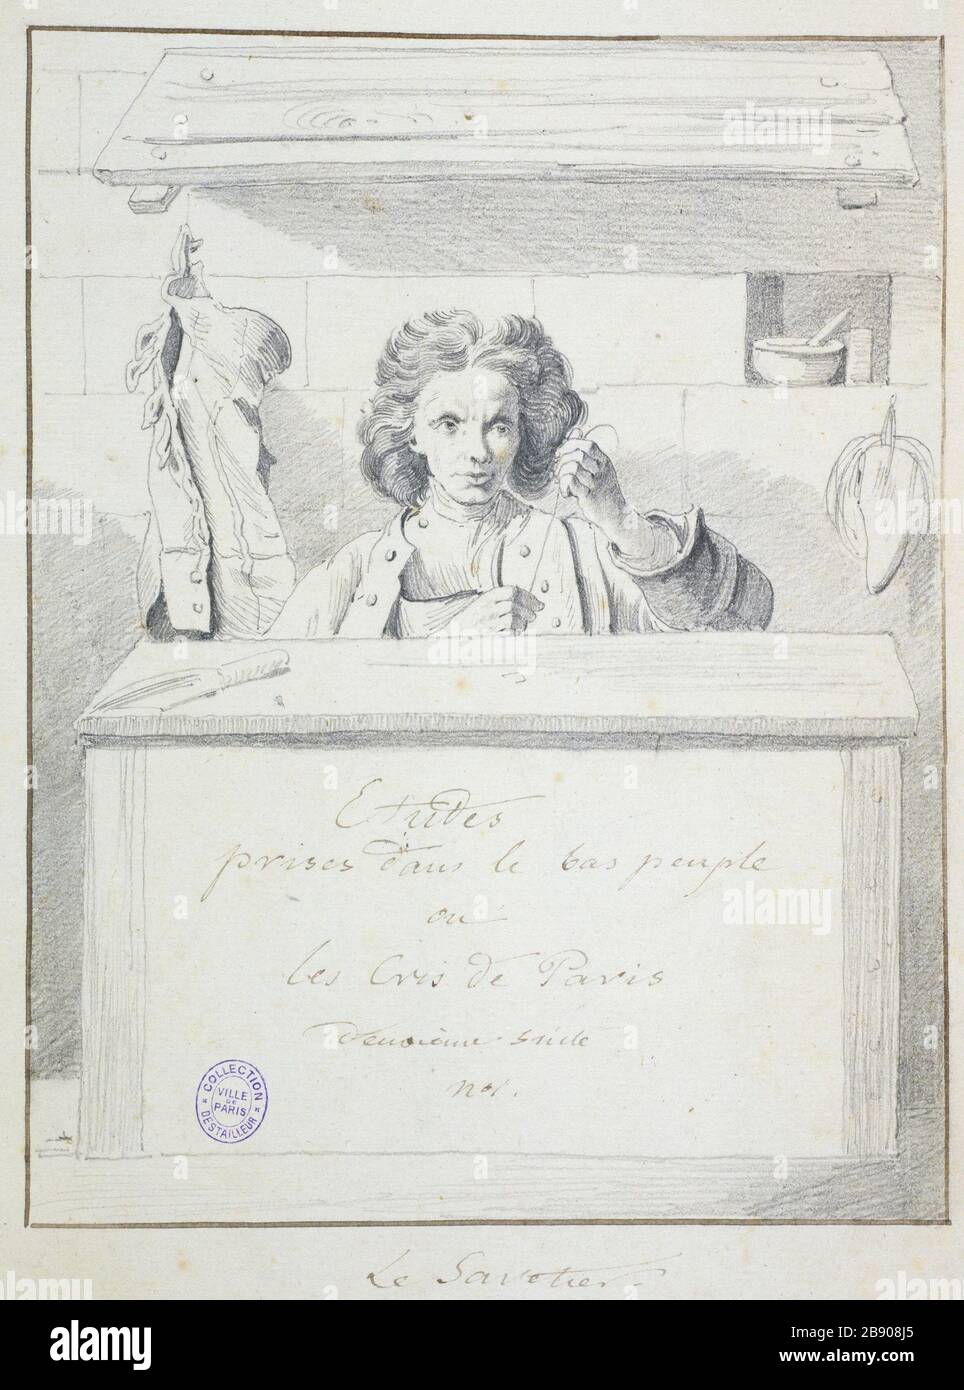 the savetier Edme Bouchardon (1698-1762). Le savetier. Mine de plomb sur papier bleuté, 1698-1762. Paris, musée Carnavalet. Stock Photo